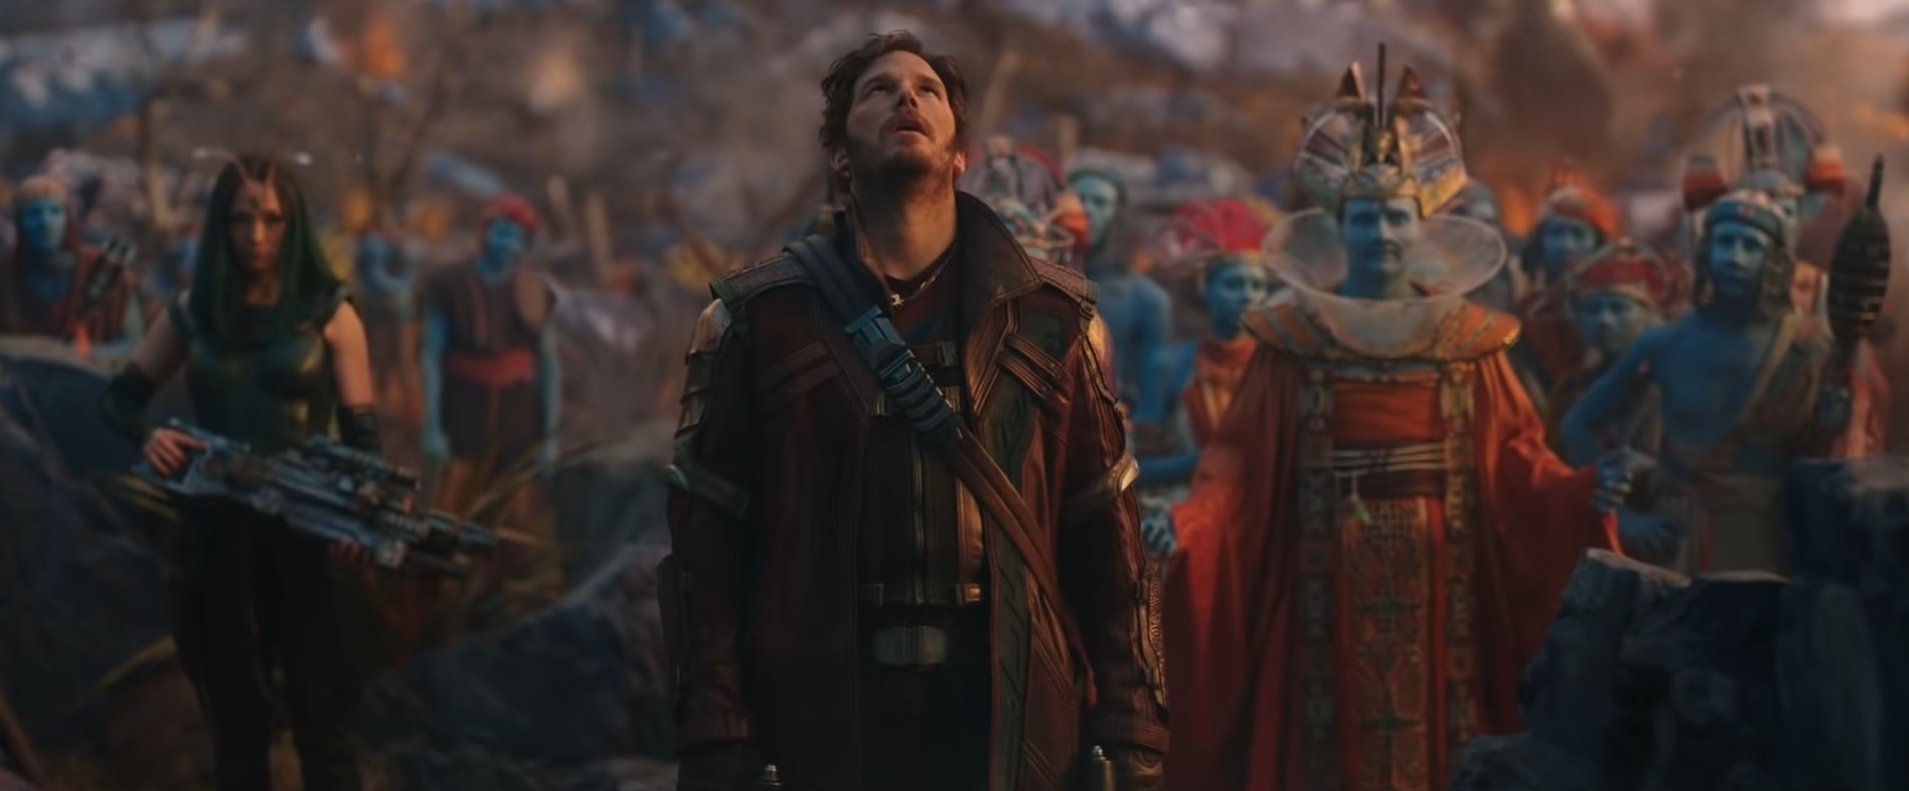 Senhor das Estrelas no trailer de Thor 4.